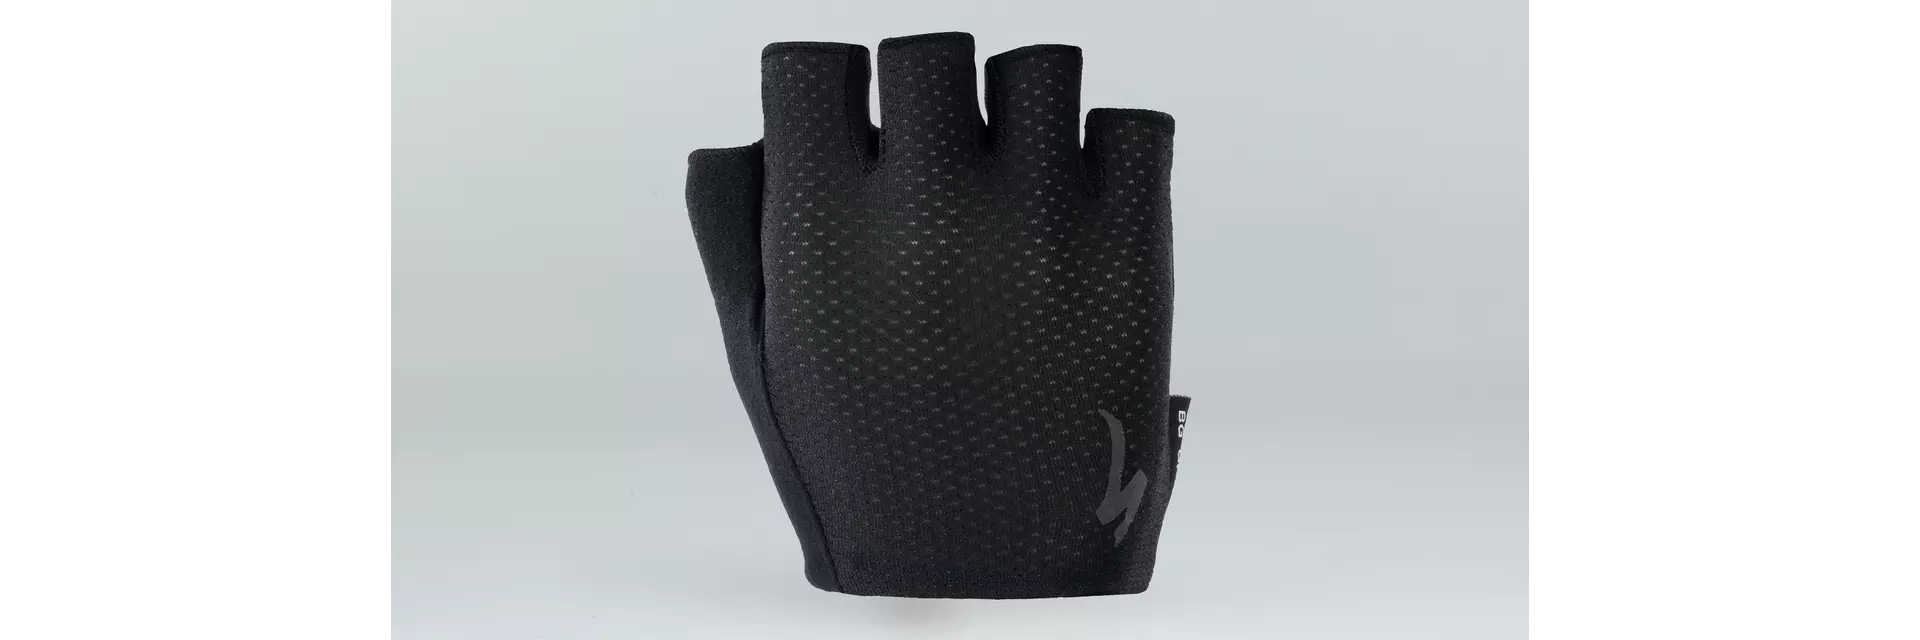 Specialized Men's Body Geometry Grail Short Finger Gloves - Liquid-Life #Wähle Deine Farbe_Black